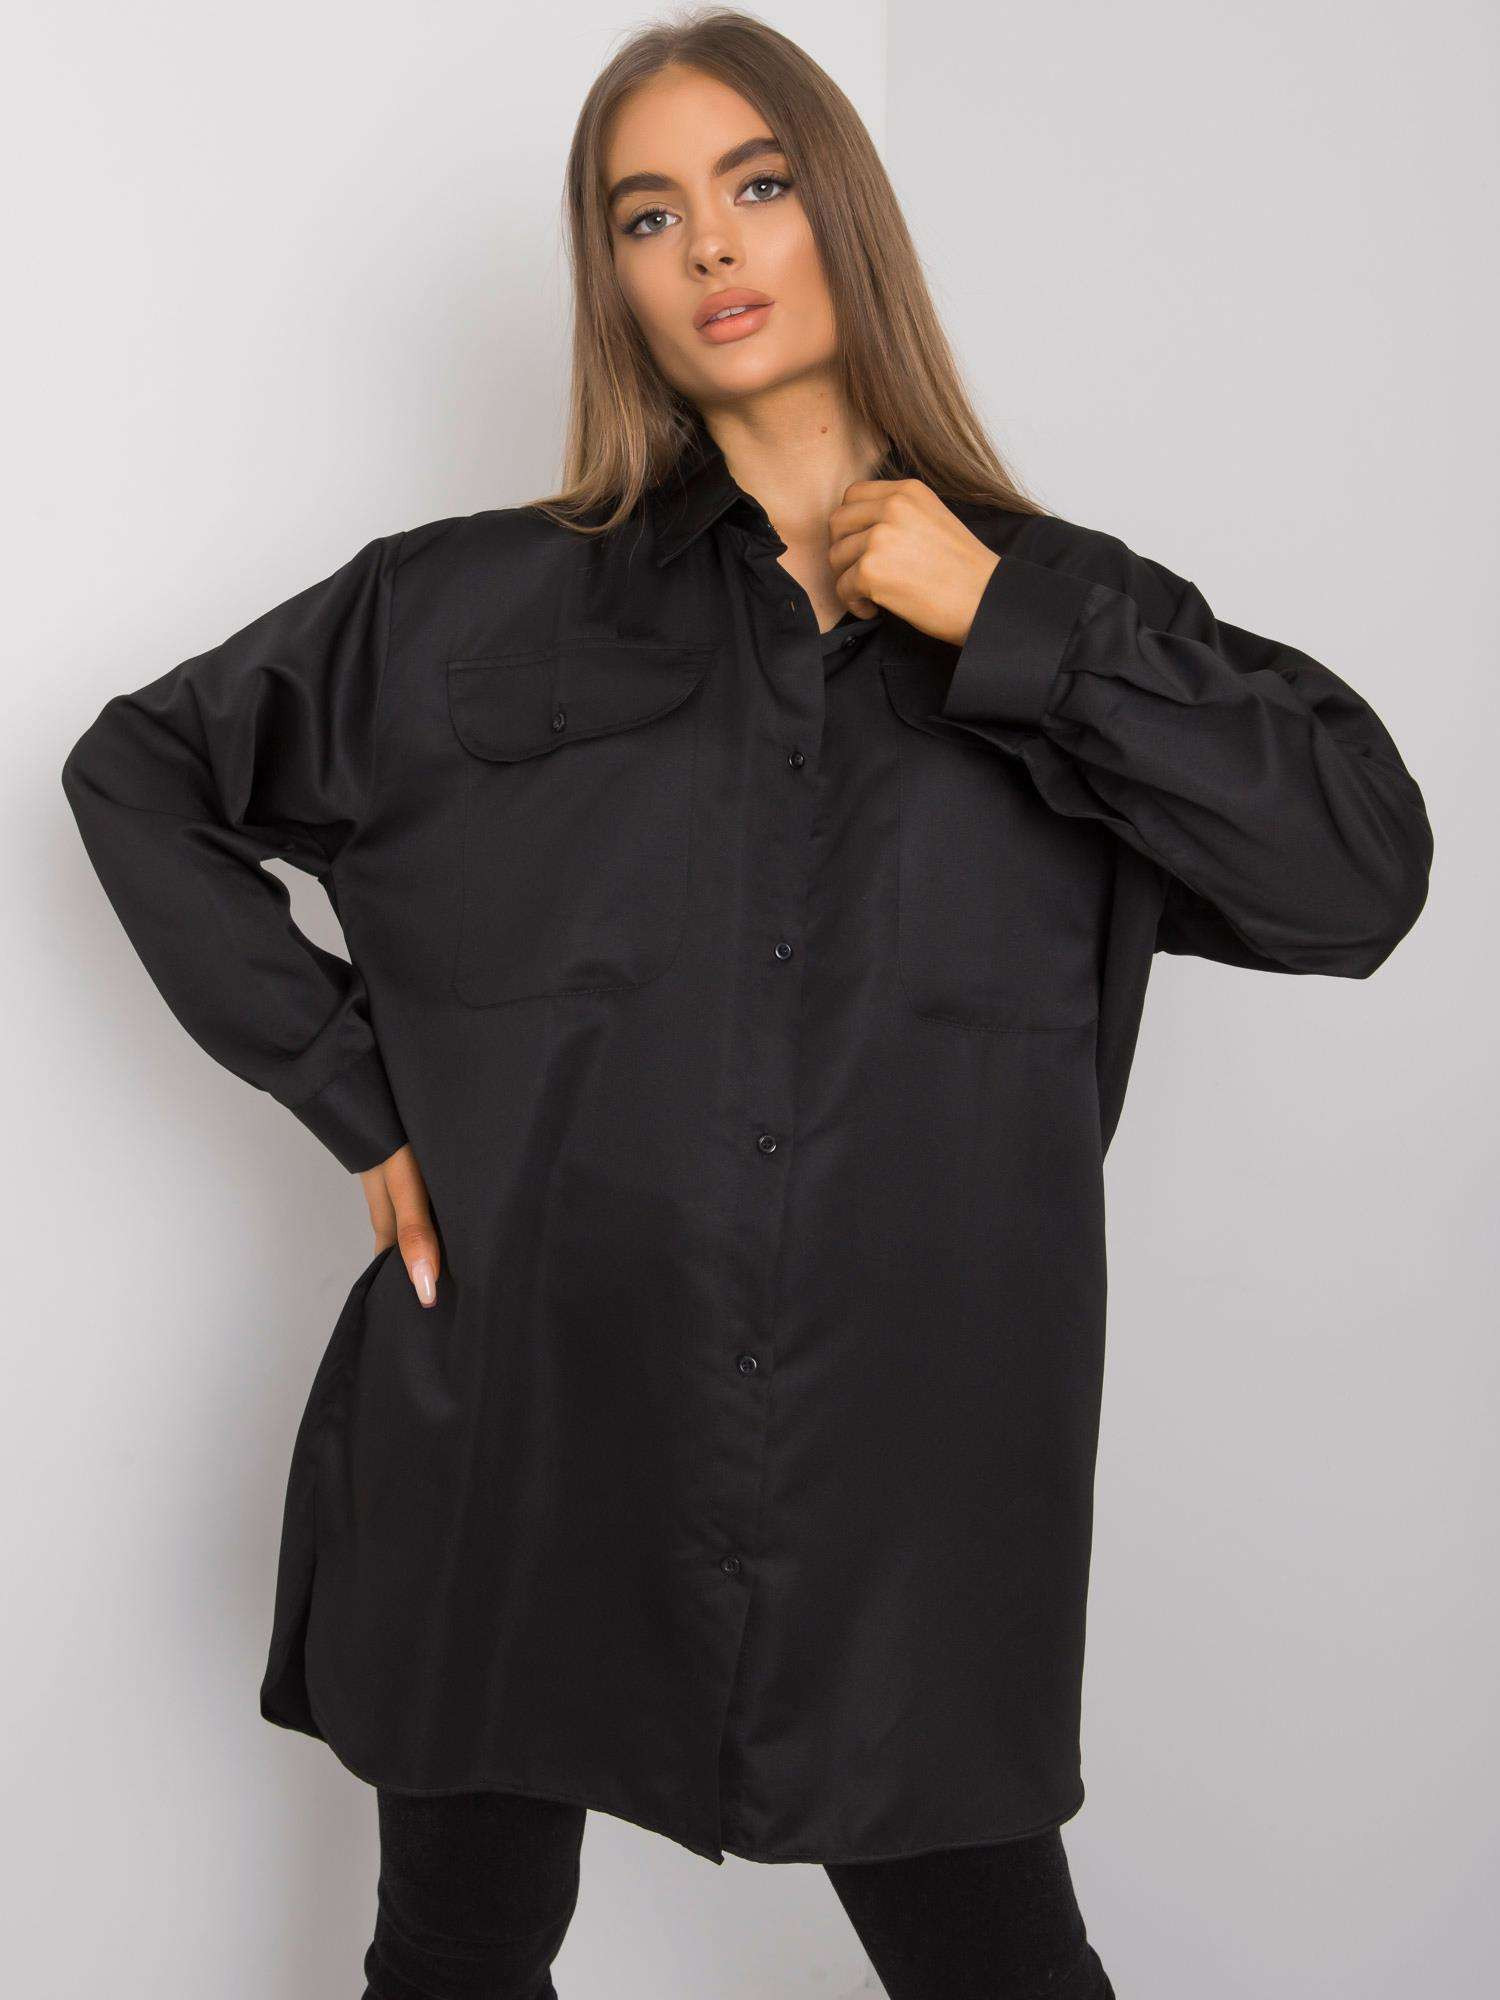 EM KS 678 shirt 1.09 černá jedna velikost